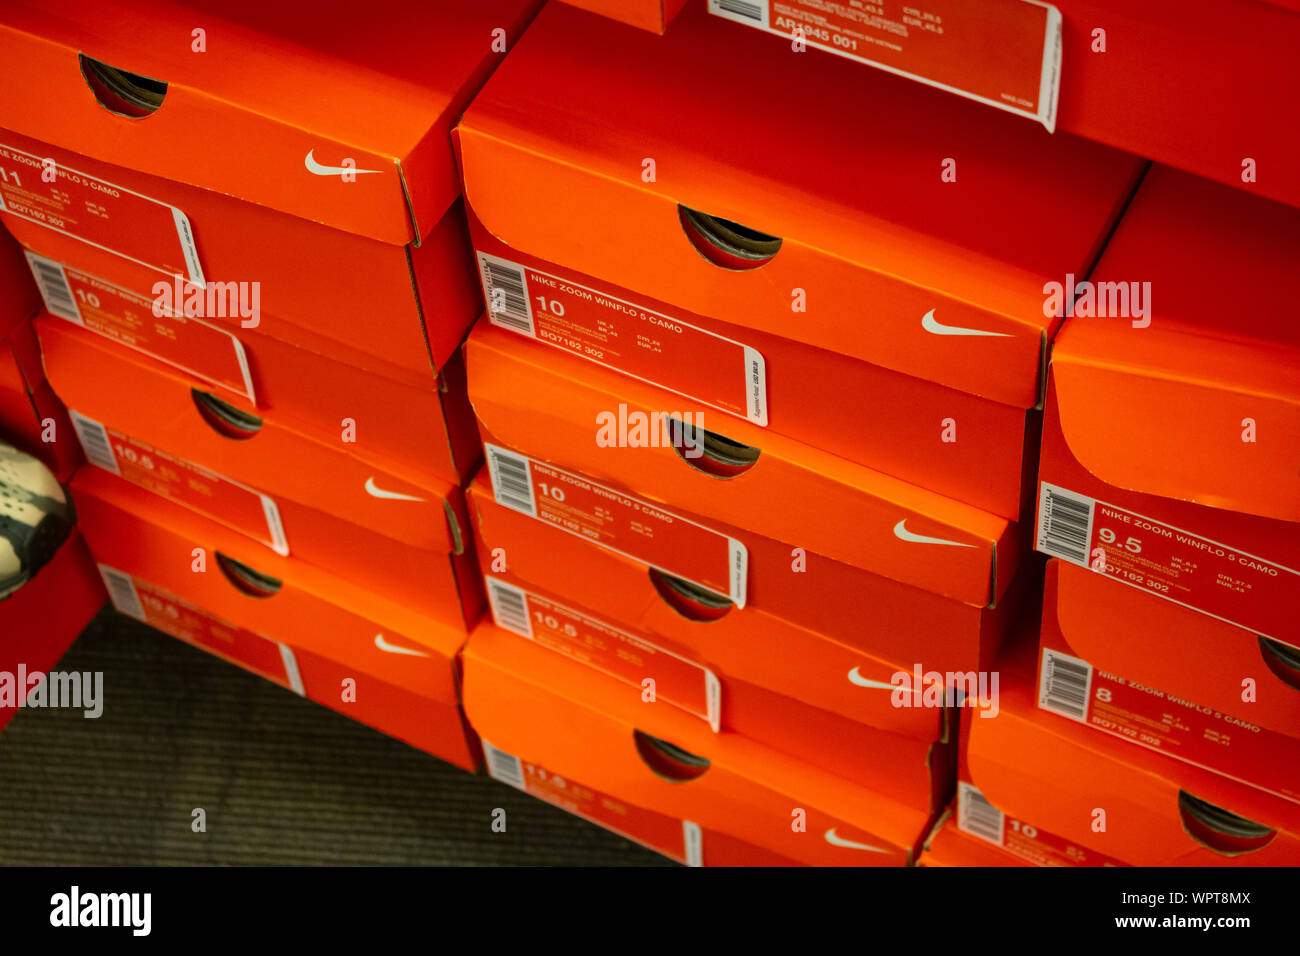 Los Angeles, Californie, États-Unis - 02-22-19: Une vue d'une pile de boîtes de chaussures Nike, exposées dans un magasin local. Banque D'Images